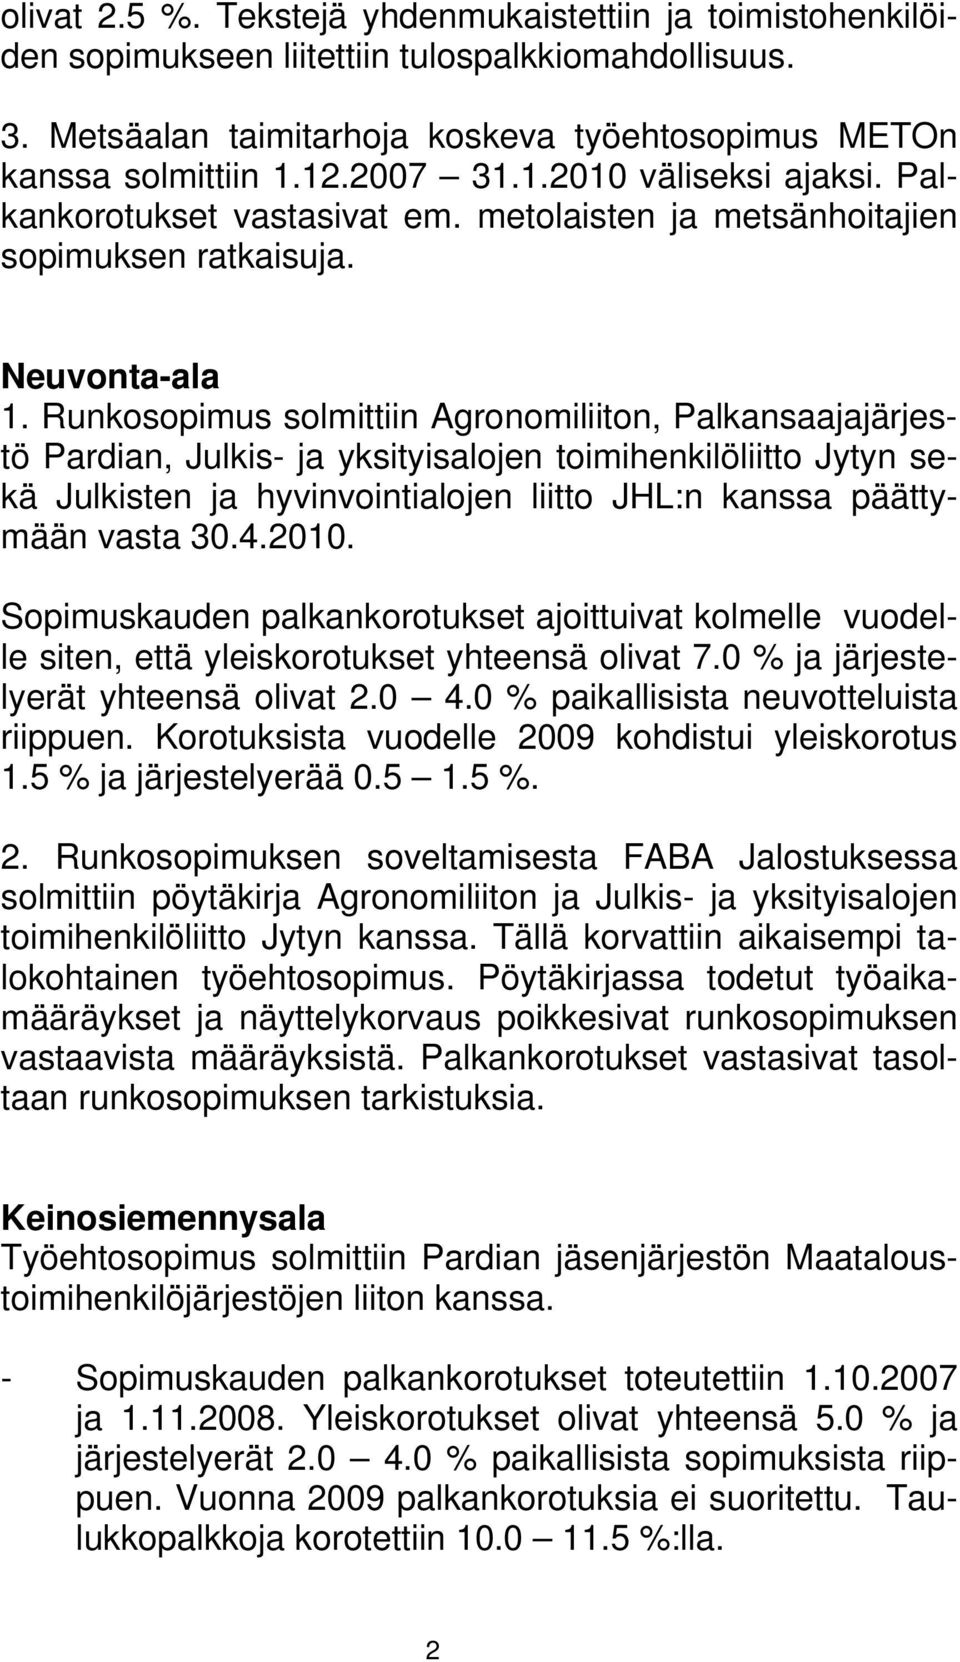 Runkosopimus solmittiin Agronomiliiton, Palkansaajajärjestö Pardian, Julkis- ja yksityisalojen toimihenkilöliitto Jytyn sekä Julkisten ja hyvinvointialojen liitto JHL:n kanssa päättymään vasta 30.4.